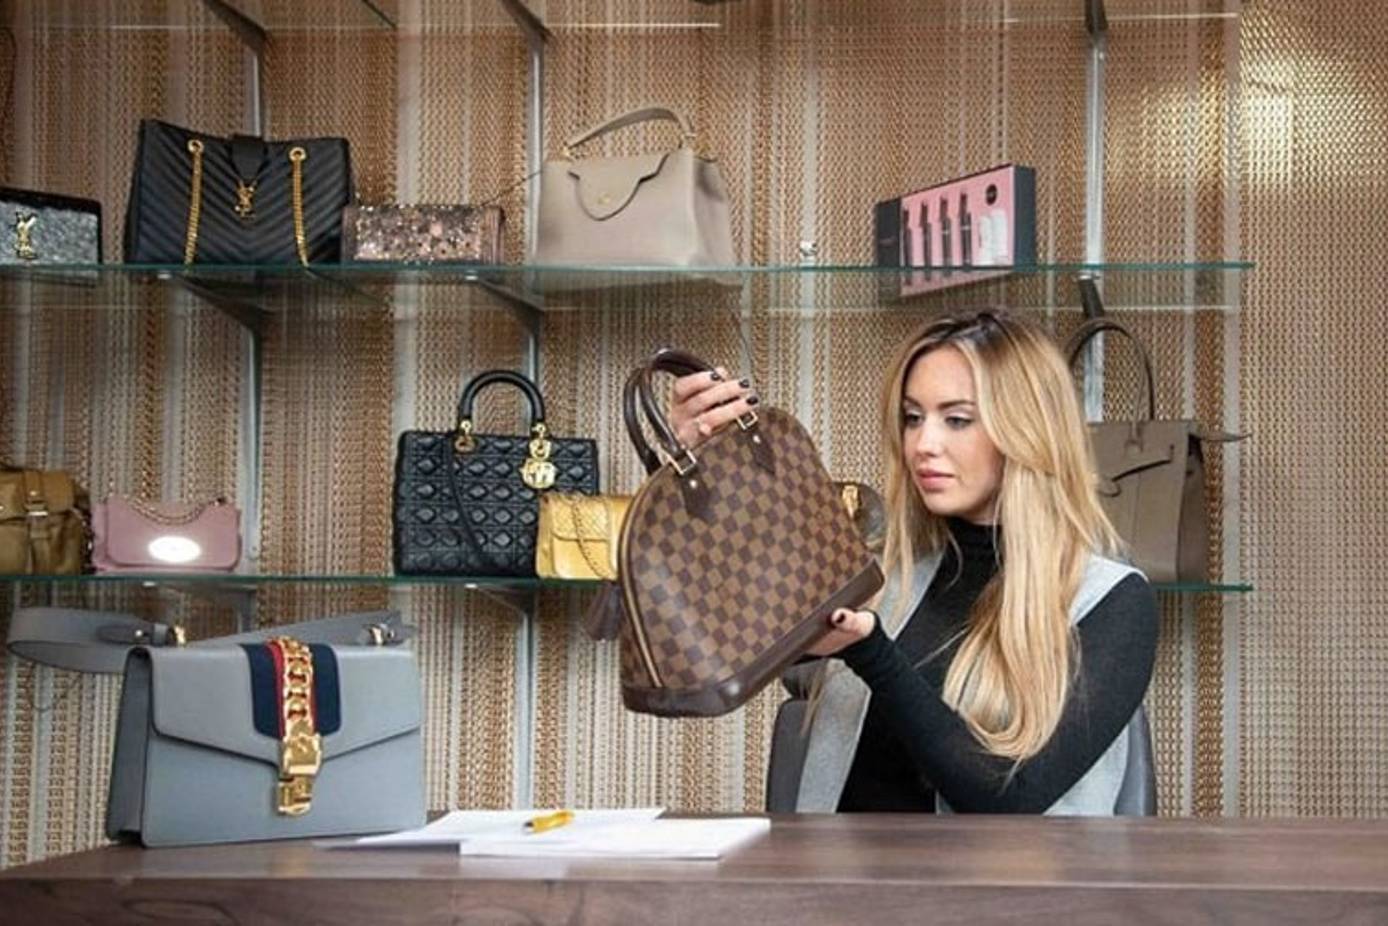 Louis Vuitton Authenticated Chelsea Handbag